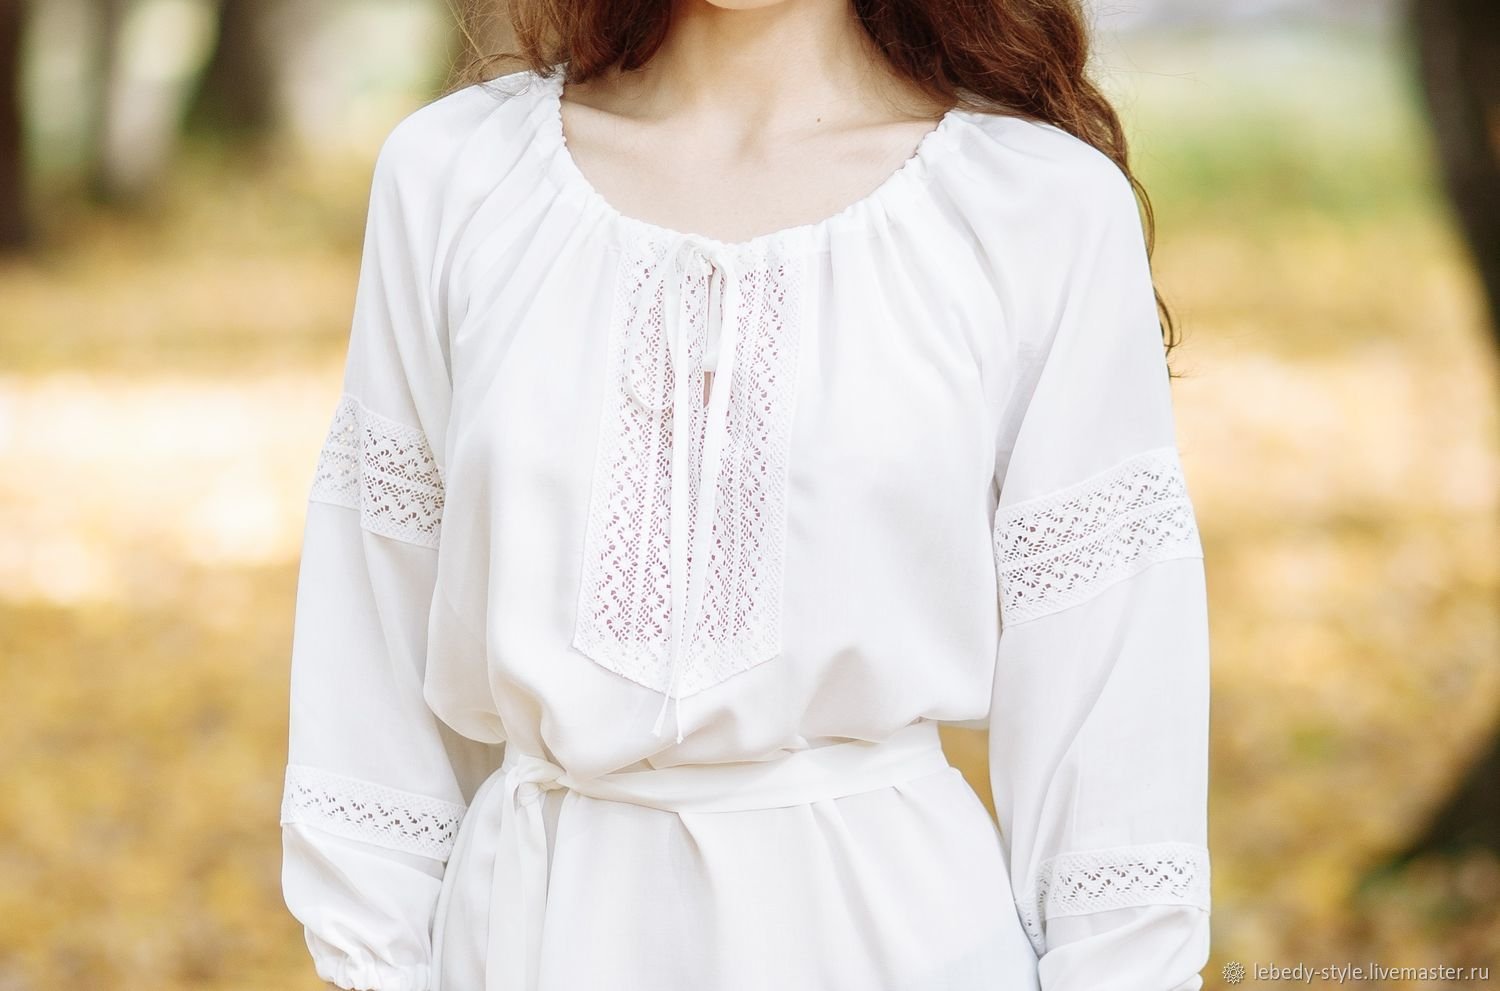 Русско народная блузка. Блузка. Белая блузка. Блузка из хлопка с кружевом. Блузка в народном стиле.